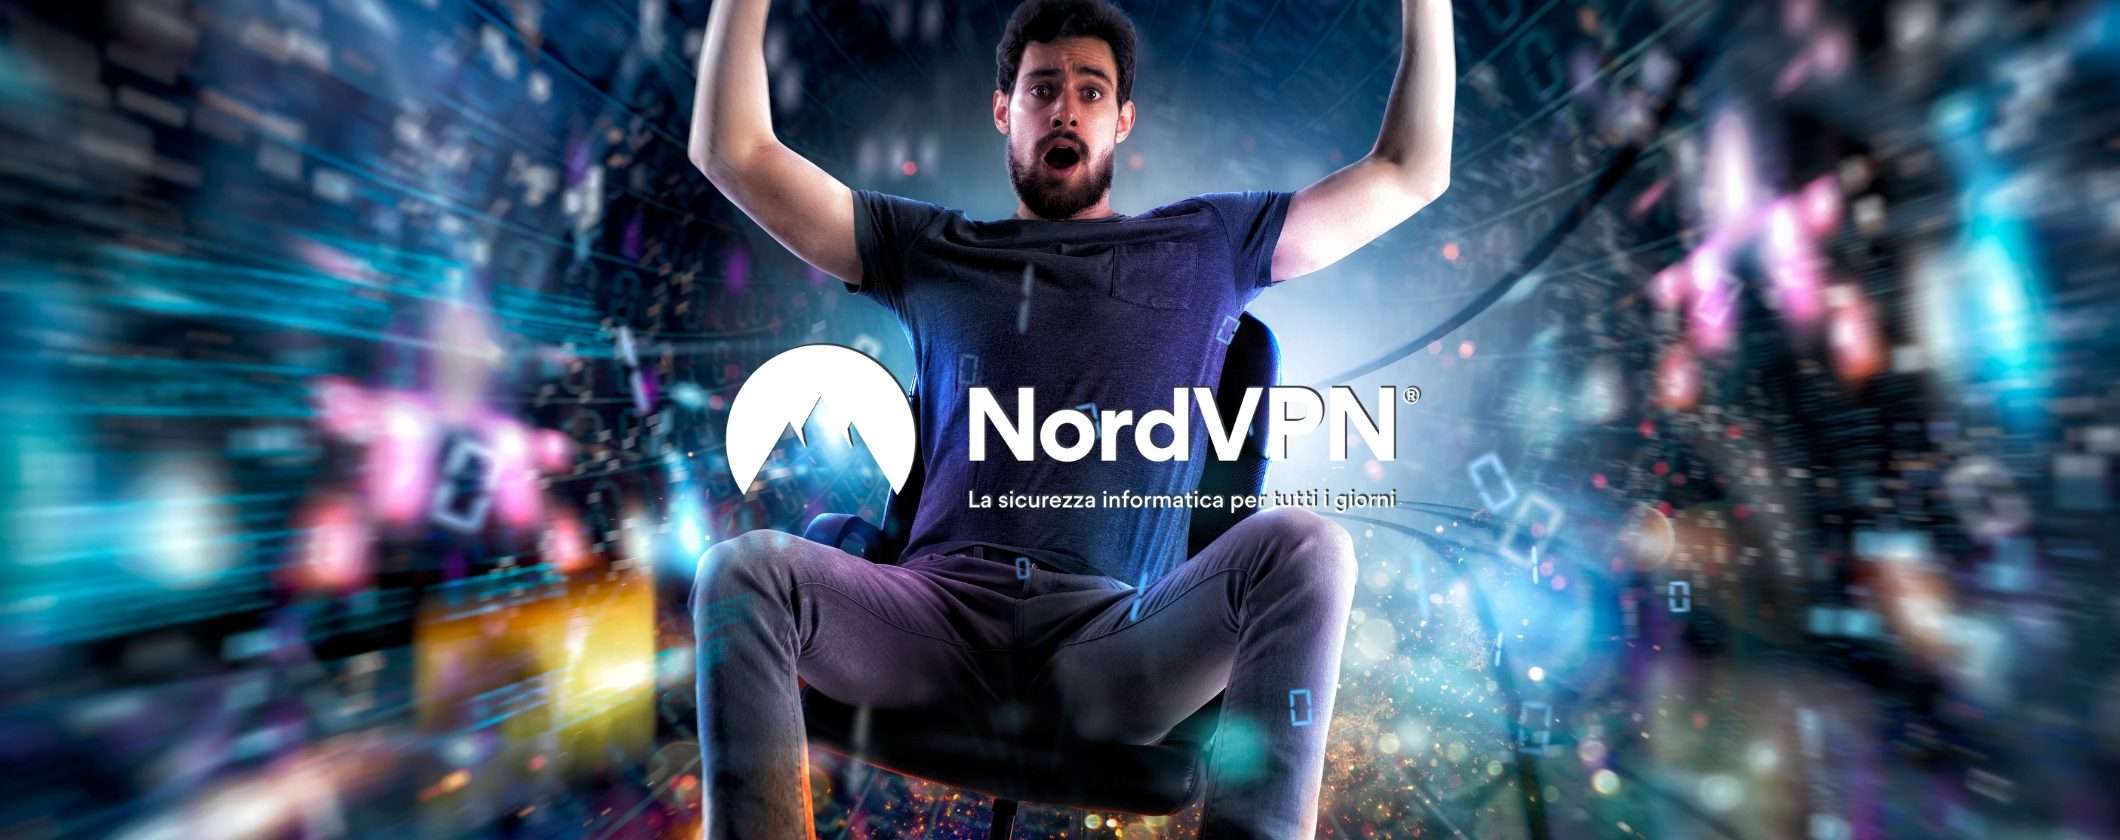 NordVPN regala velocità estreme alla tua connessione dati